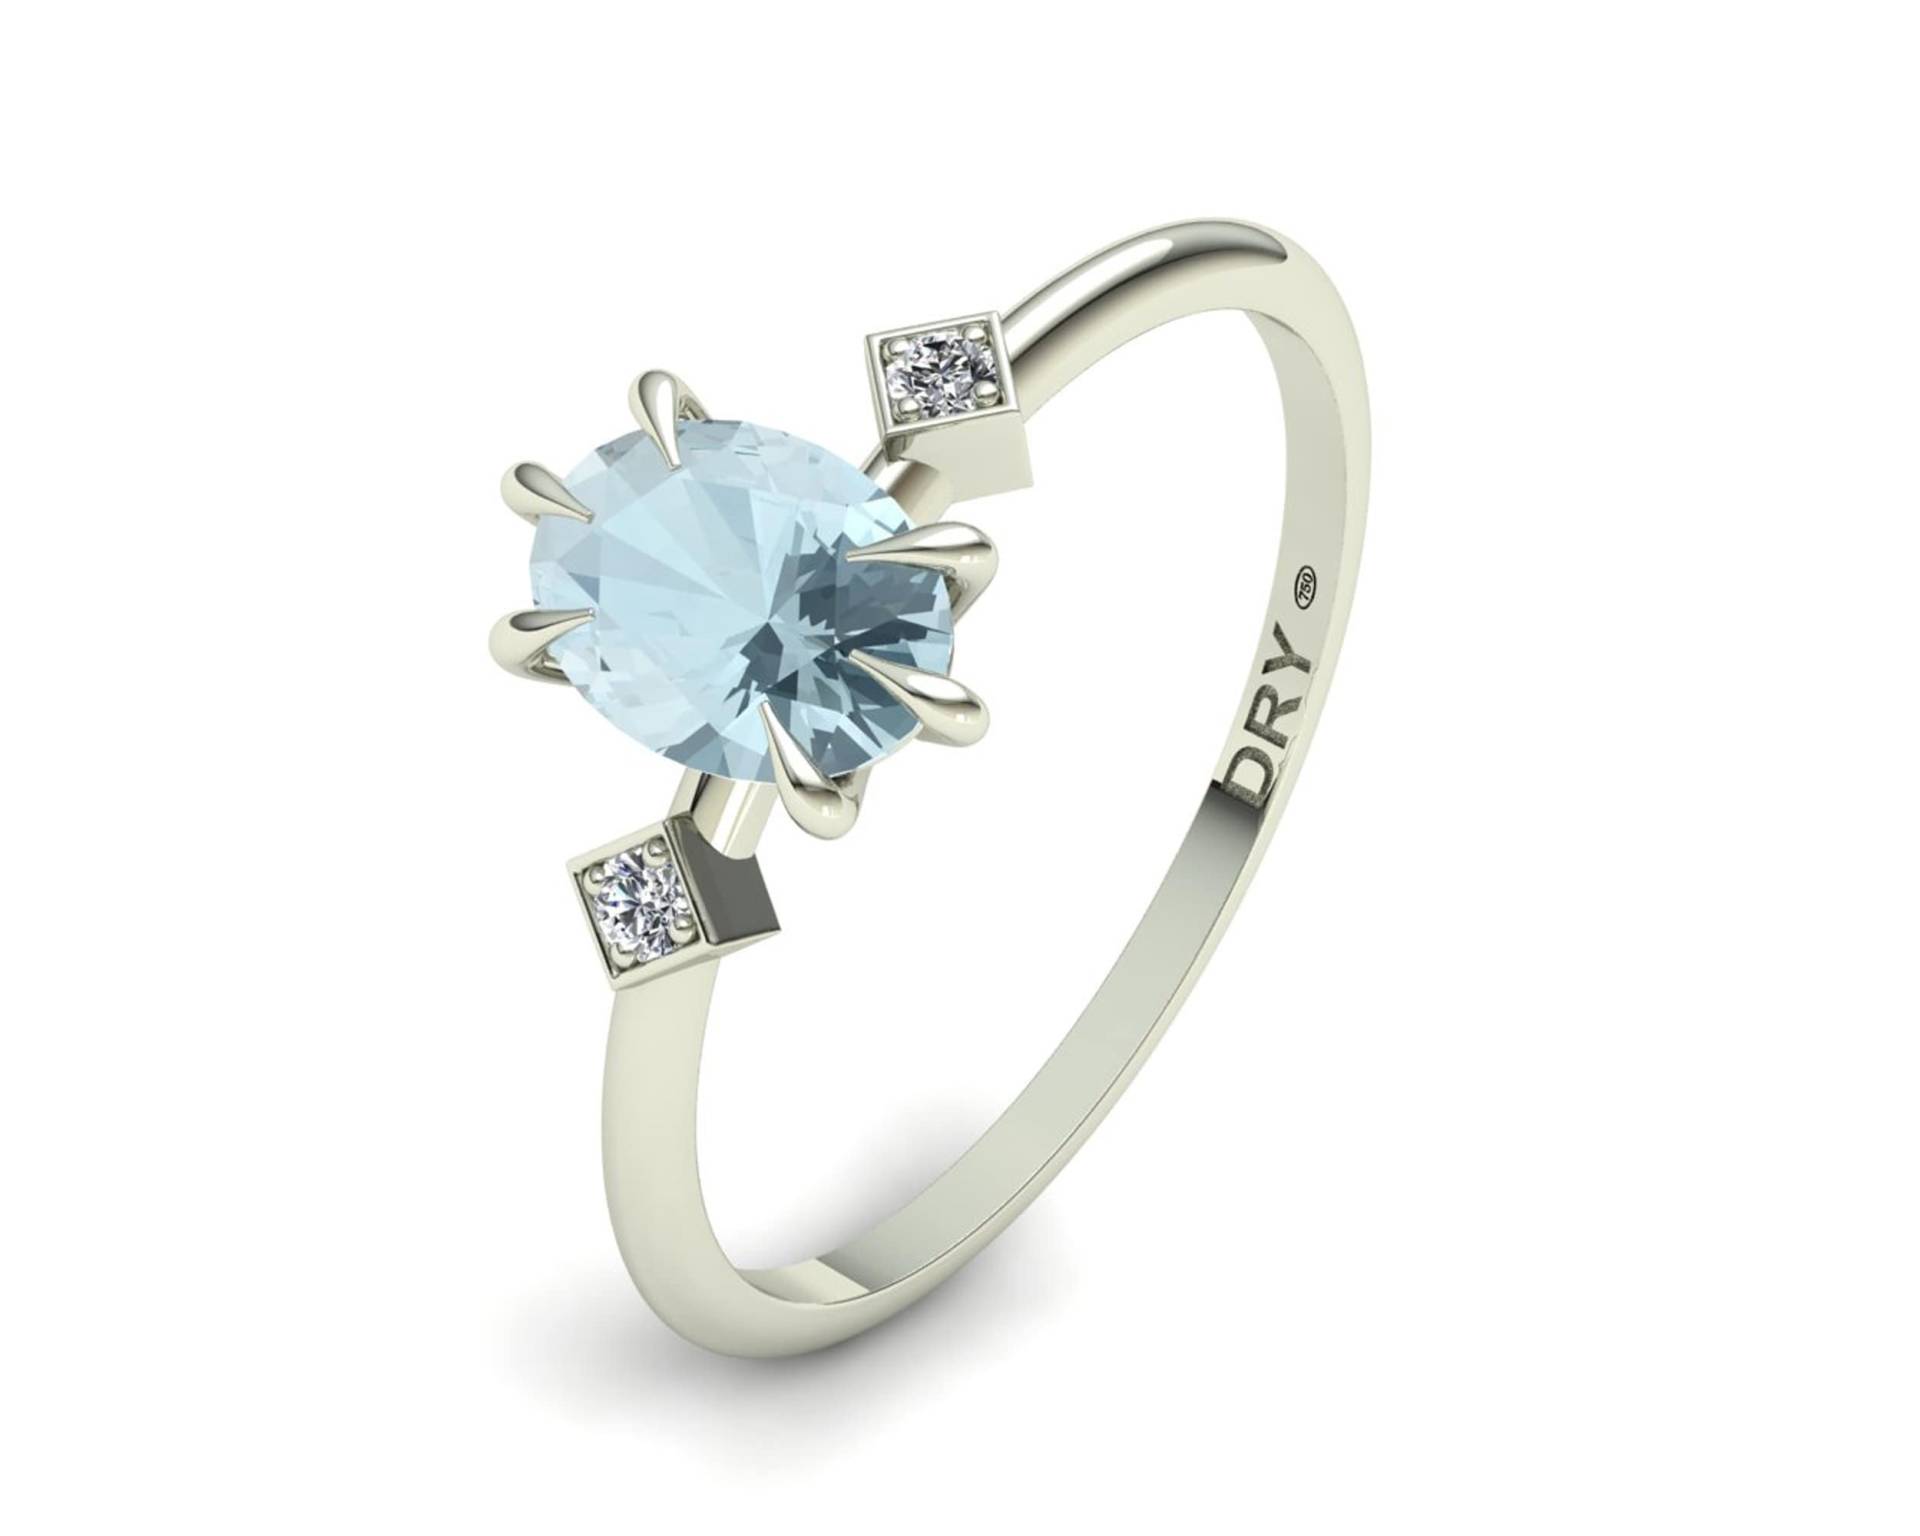 Ring Aus Weißgold Mit Aquamarin Und Diamanten. Ein Spektakuläres Ringdesign Für Frauen, Perfekt Ein Geschenk, Eine Verlobung Oder Jubiläum von PepeDry